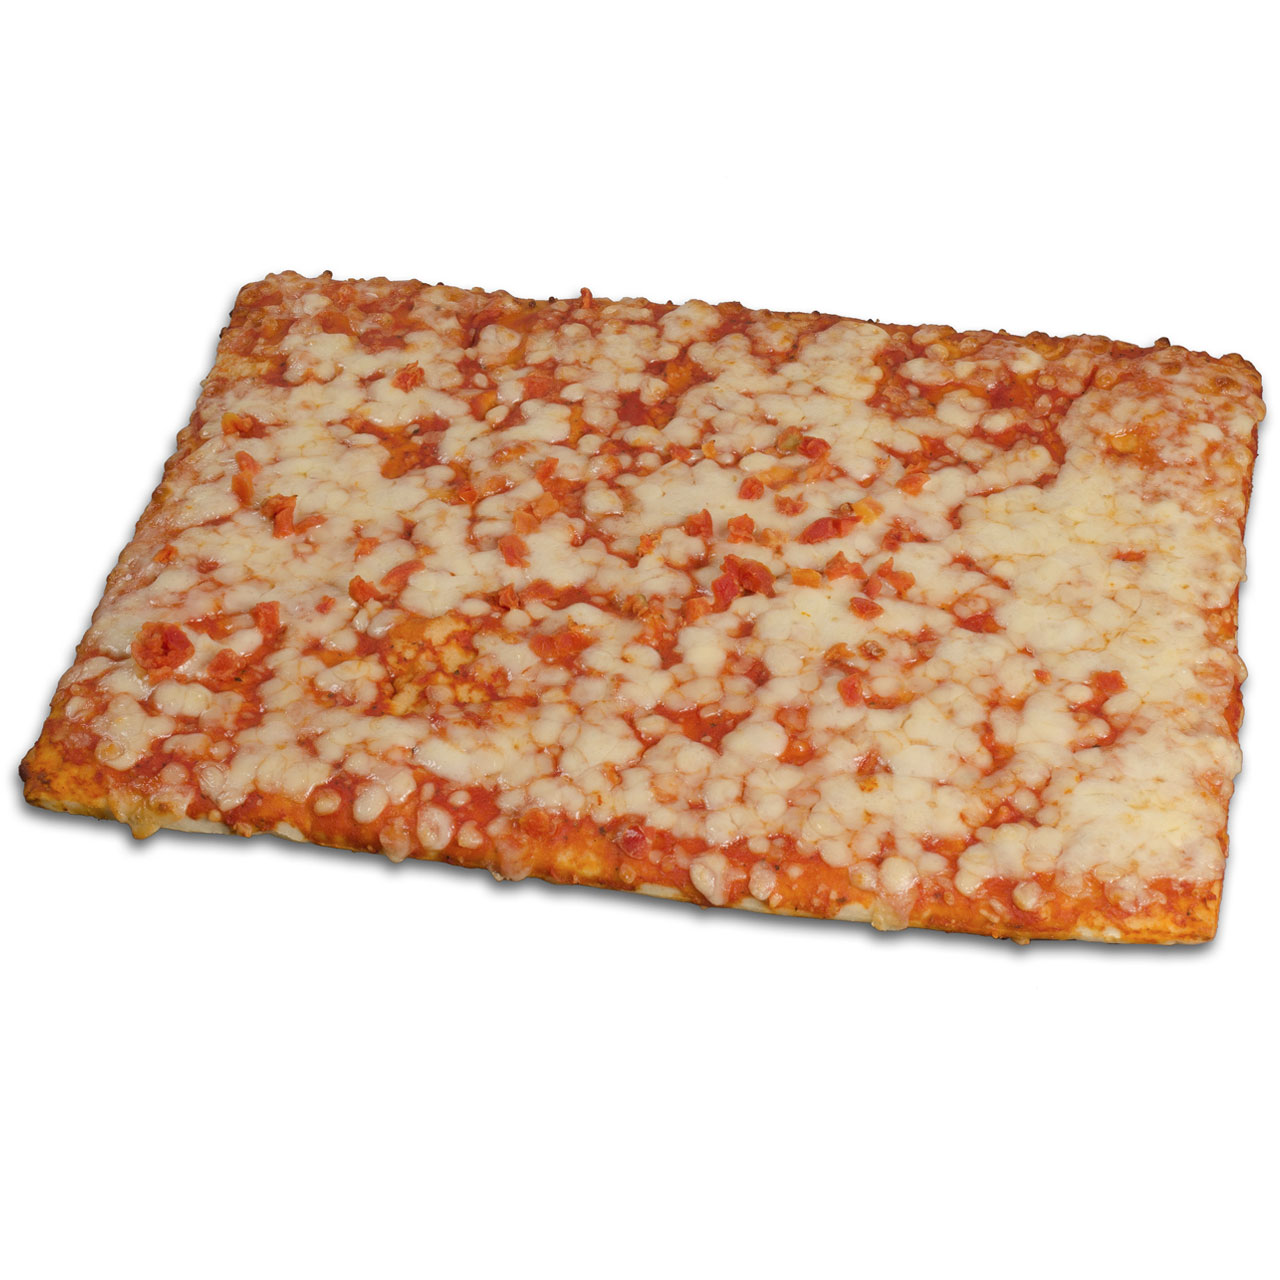 Trancio pizza margherita